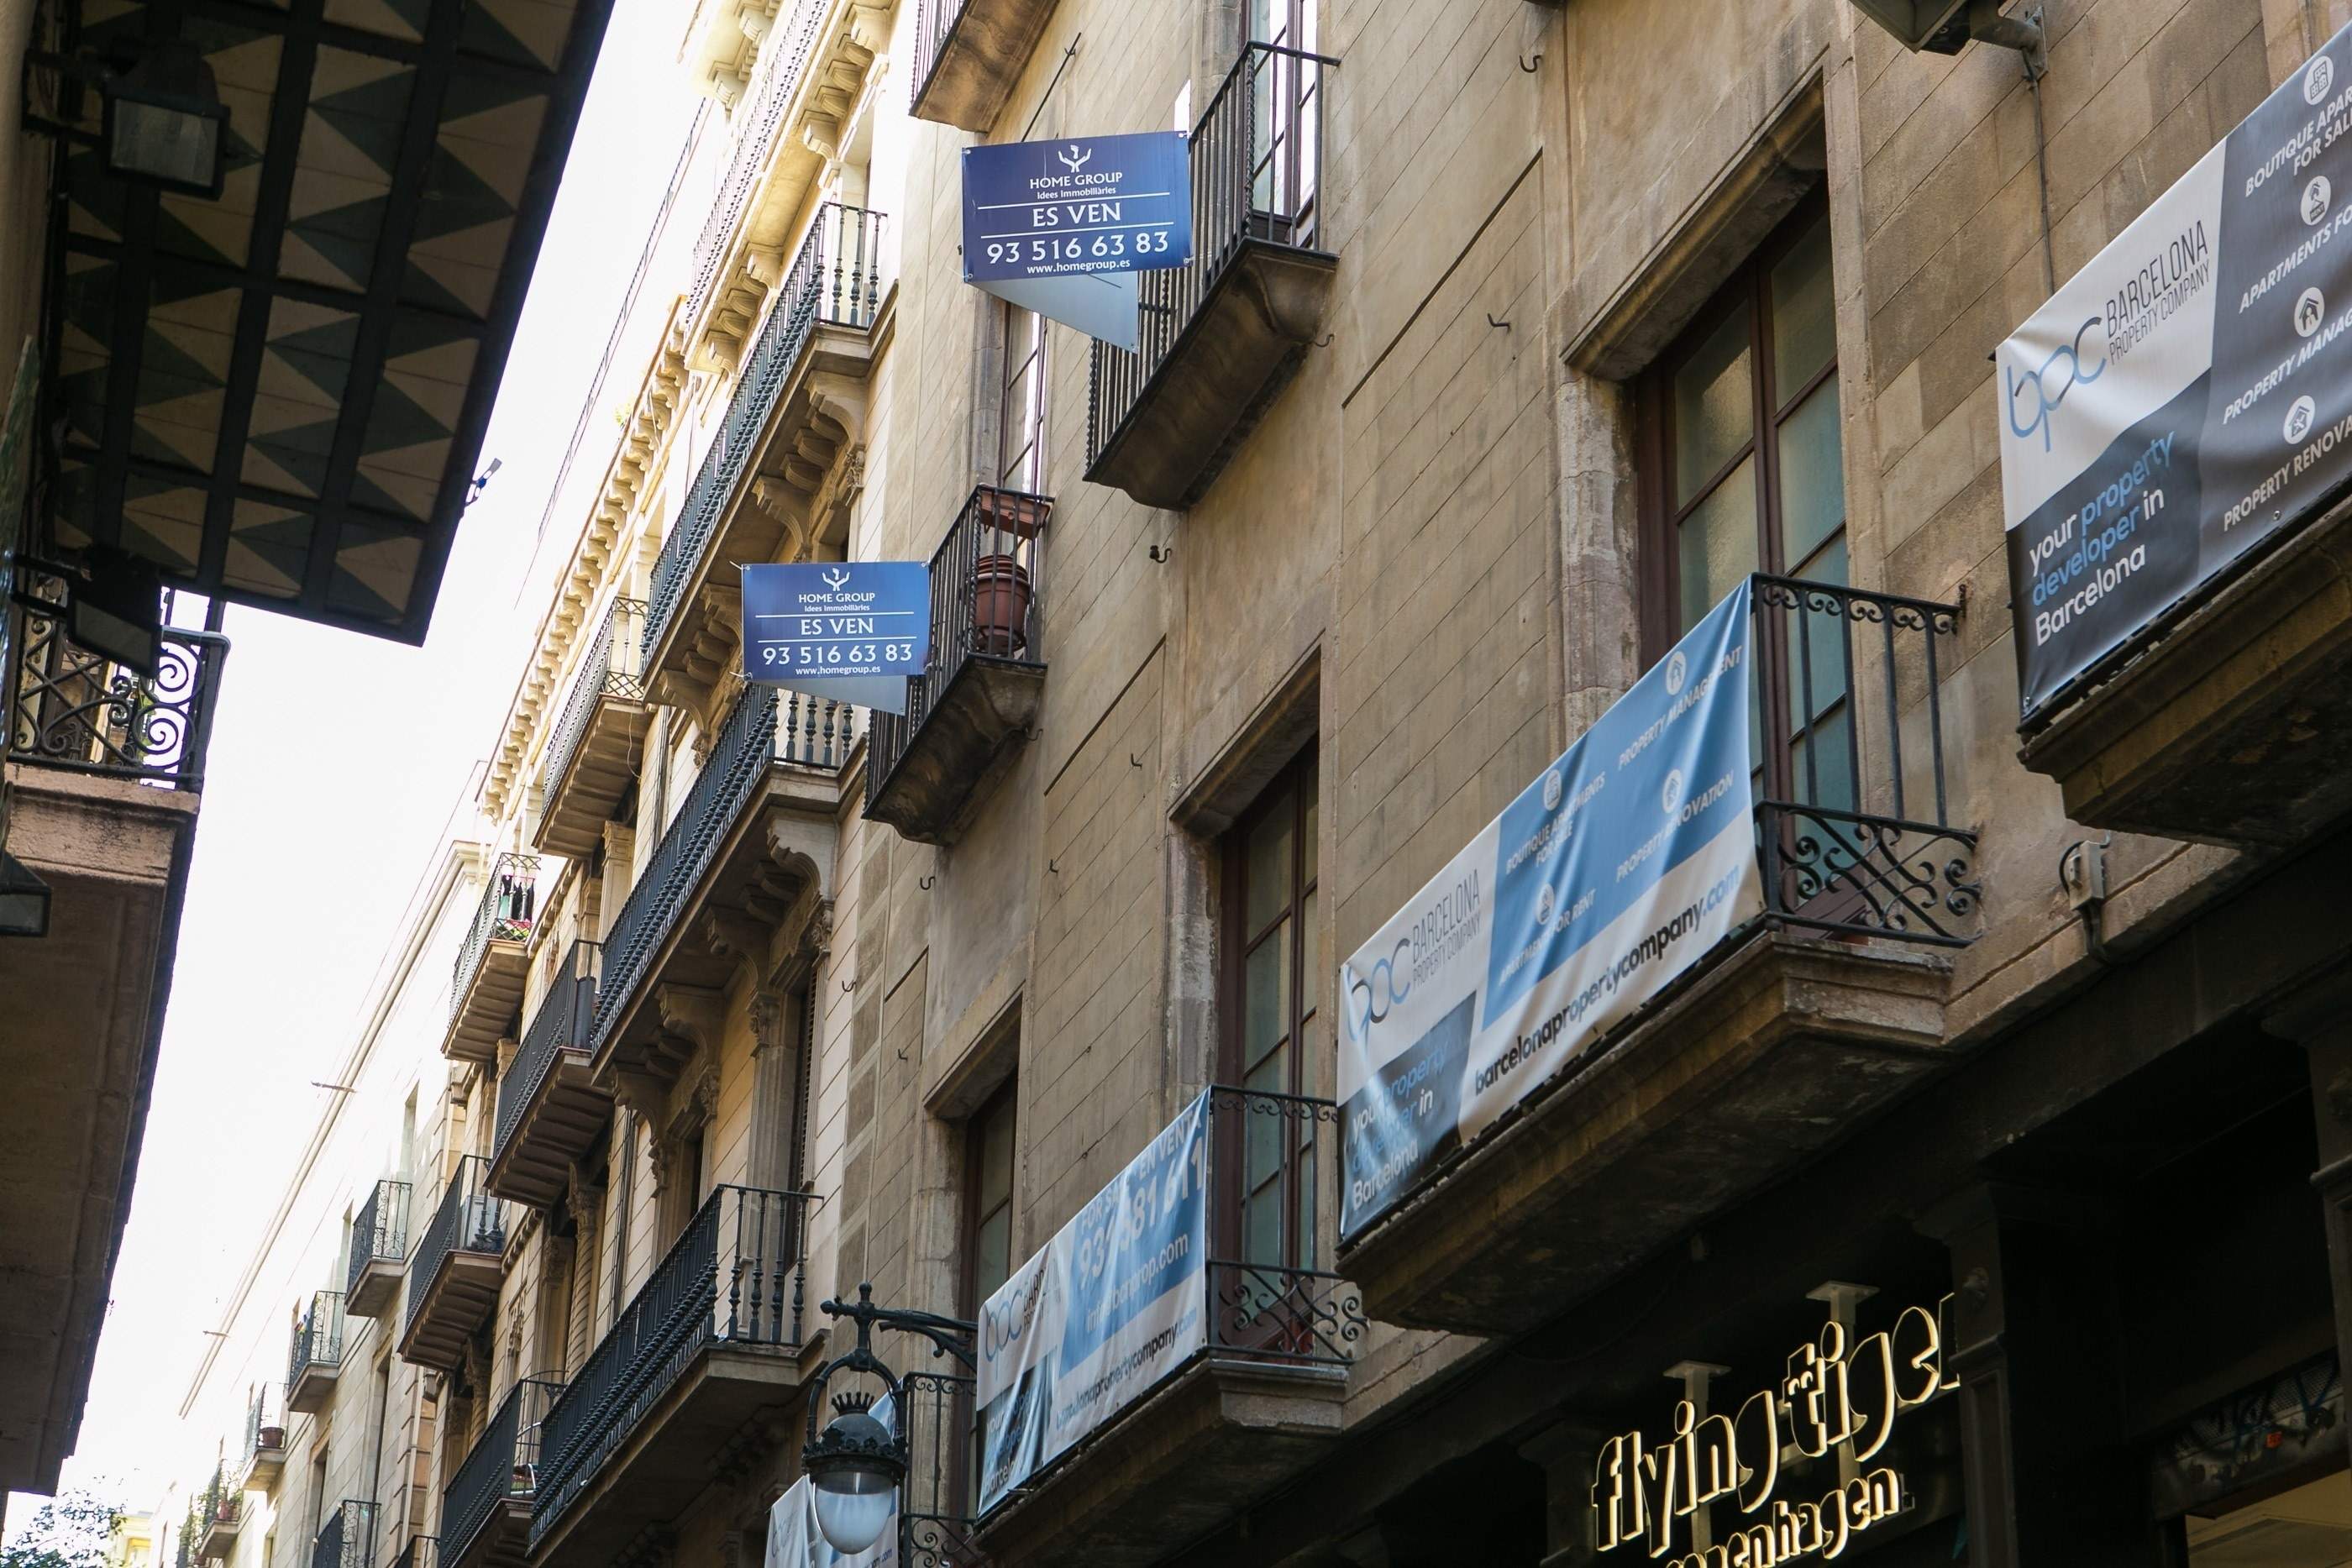 Pisos en venta y alquiler en Barcelon. EuropaPress